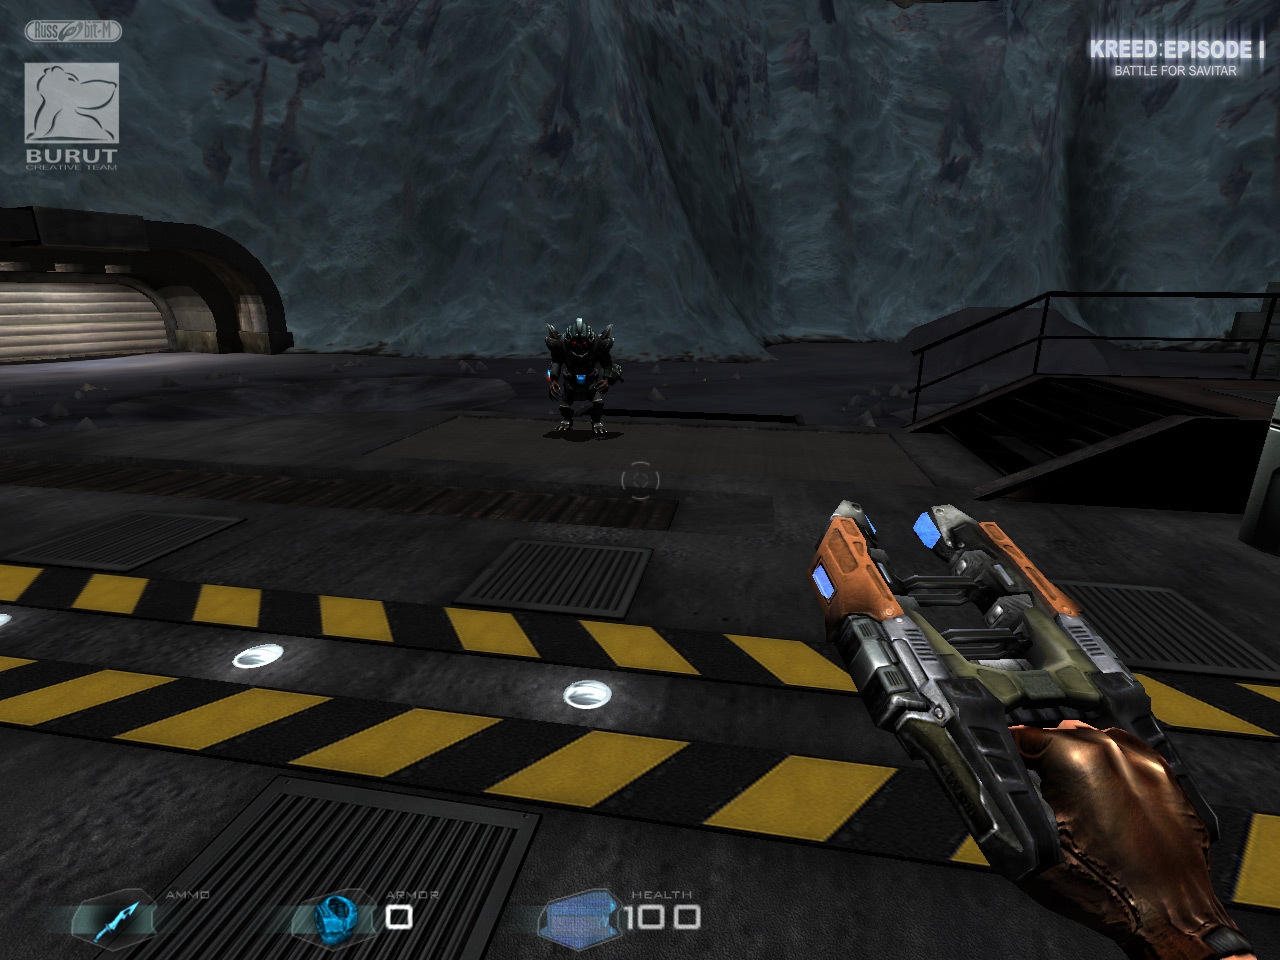 Скриншот из игры Kreed: Battle for Savitar под номером 15